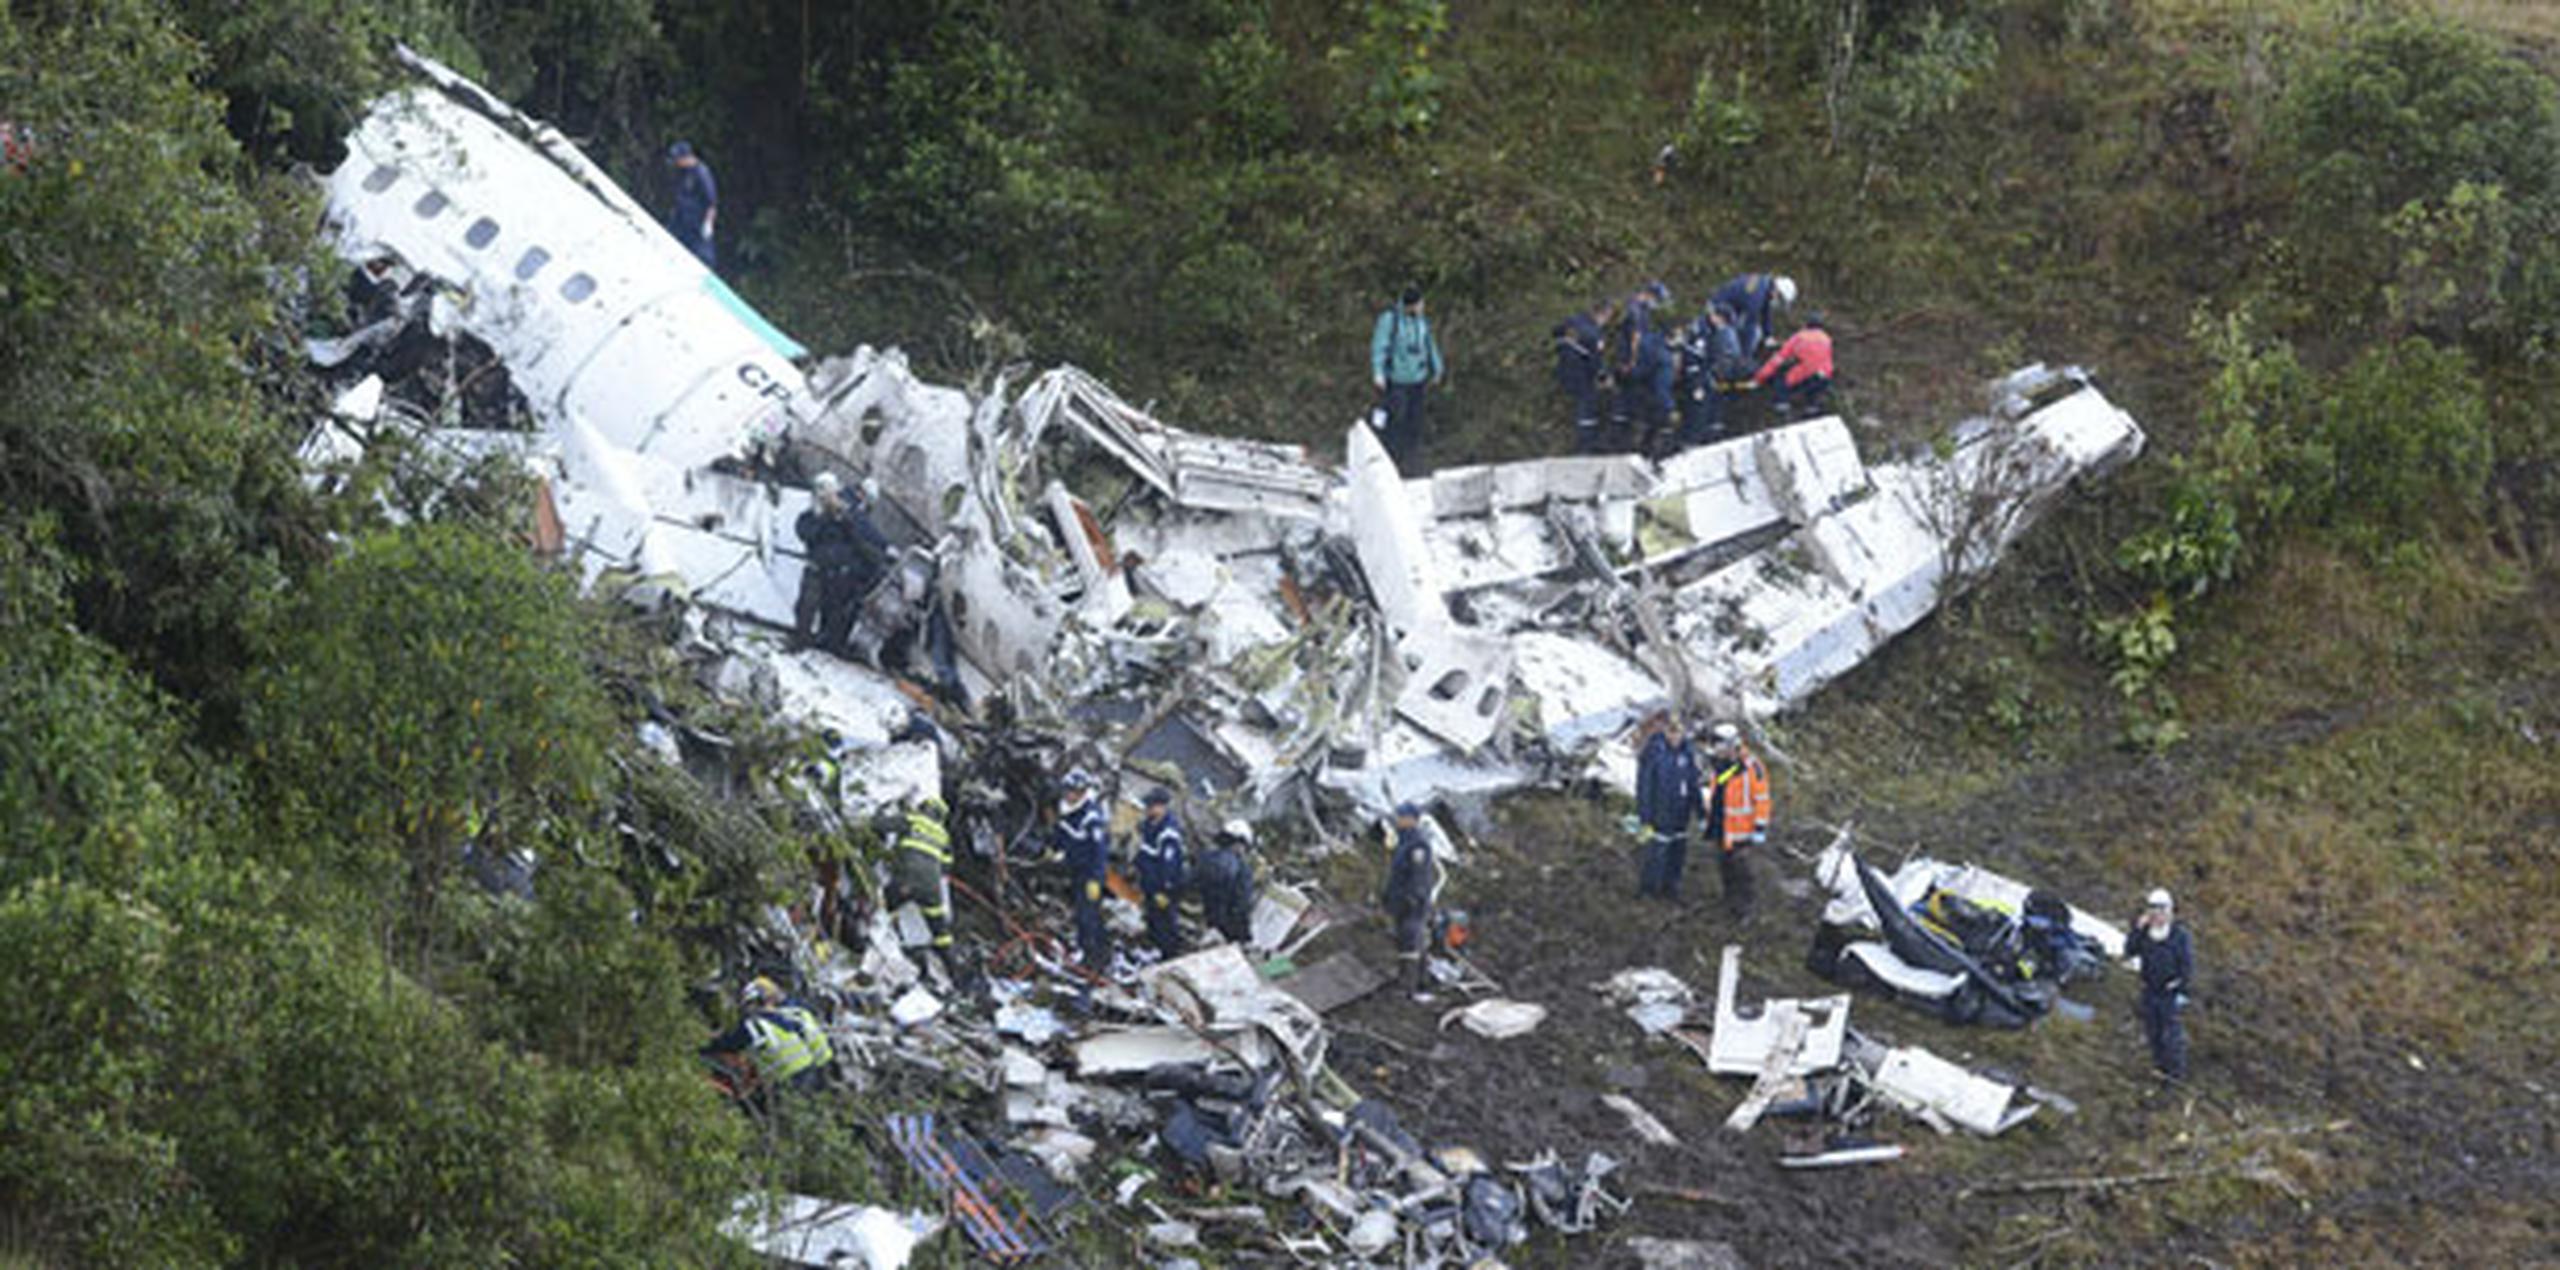 Caio Júnior murió en el trágico accidente junto a otras 74 personas, según datos oficiales de las autoridades. (Prensa Asociada)